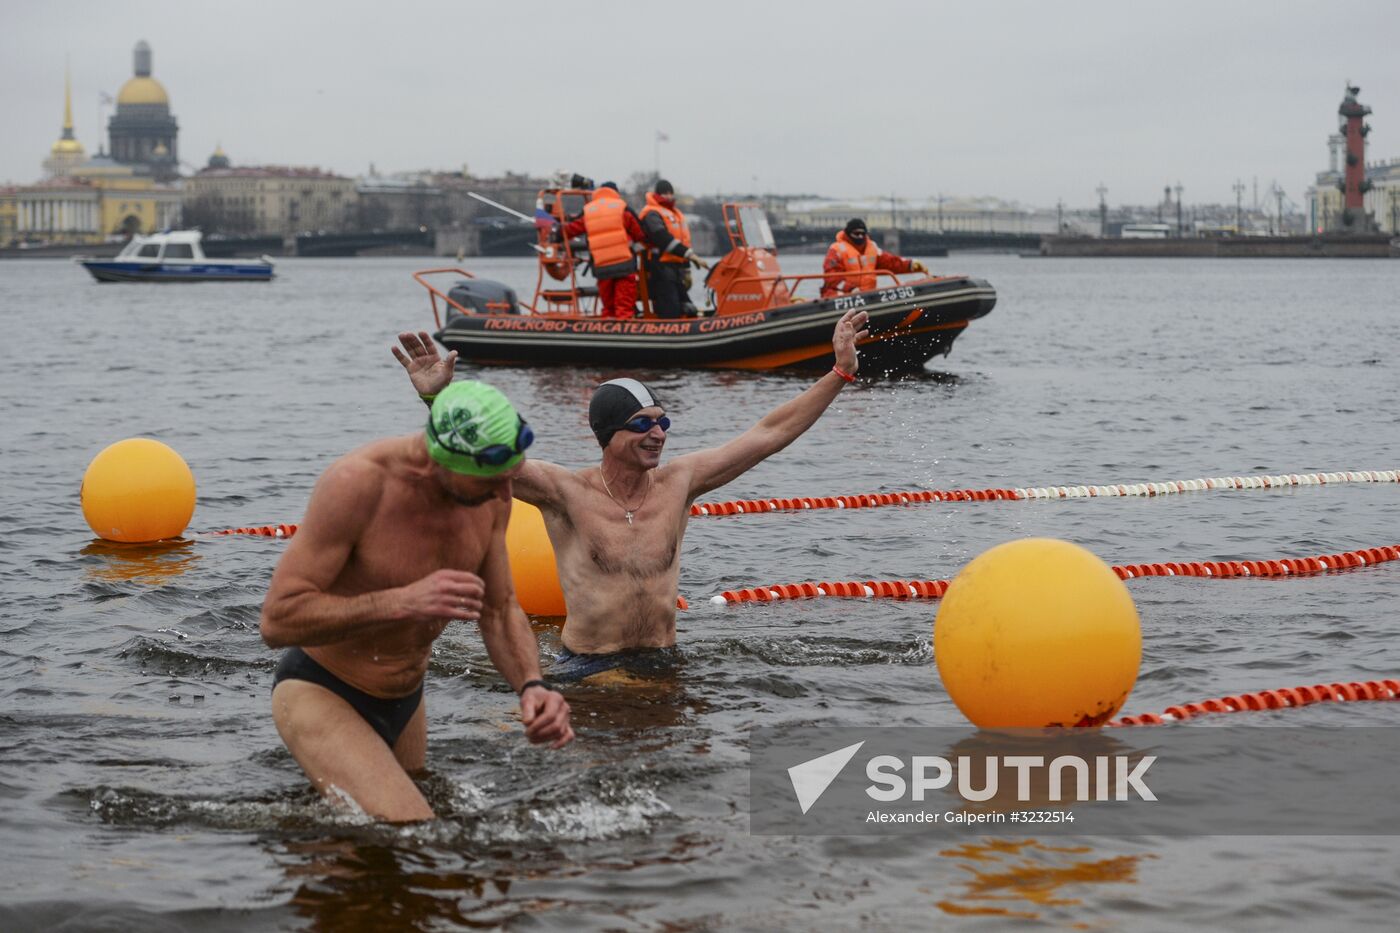 Ledostav winter swimming festival in St. Petersburg